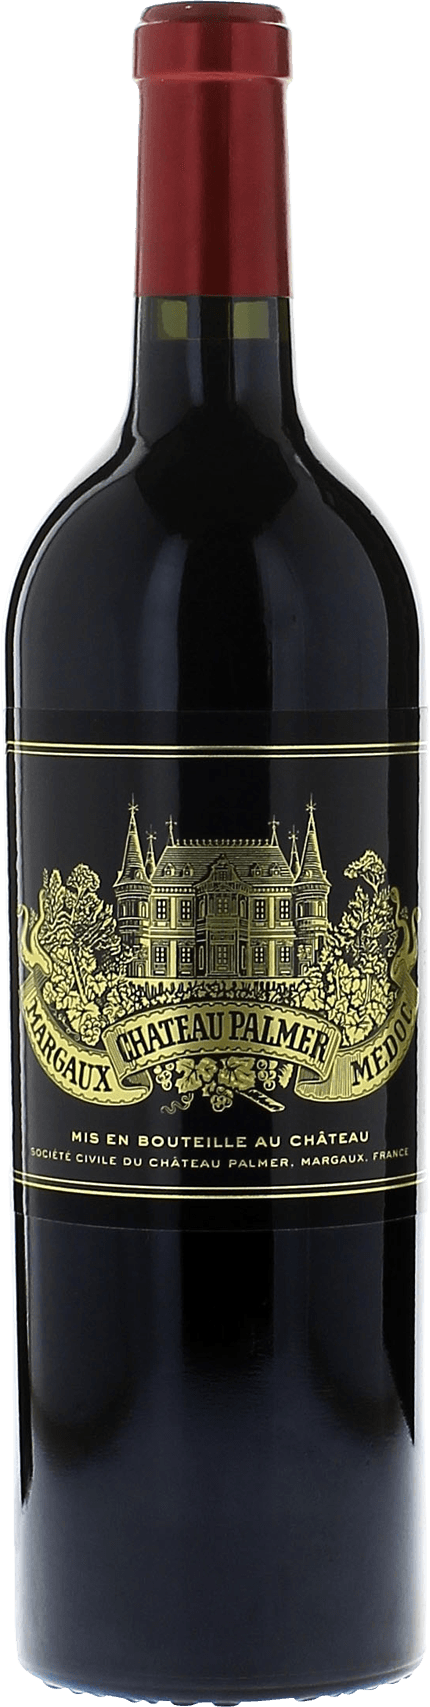 Palmer 2015 3me Grand cru class Margaux, Bordeaux rouge